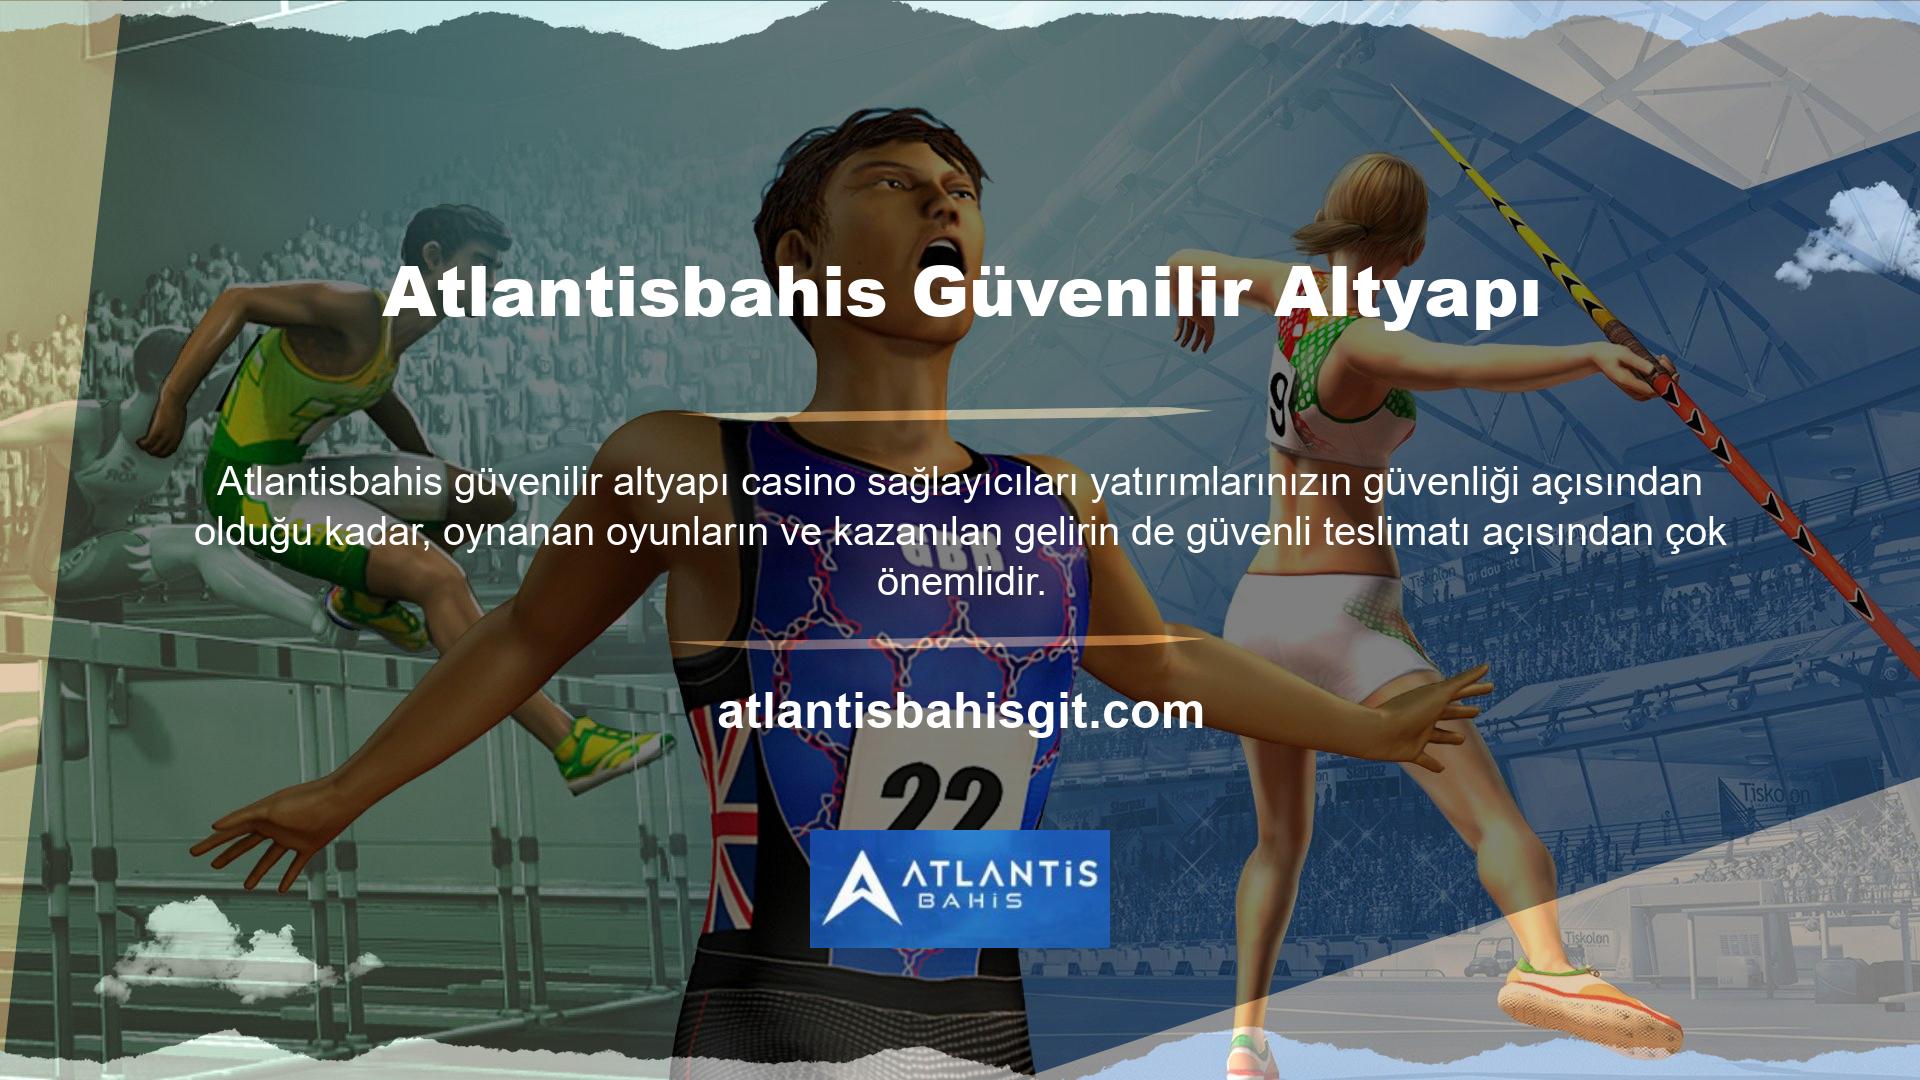 Atlantisbahis casino sağlayıcıları, uluslararası arenada her alanda adından söz ettiren kurumlarla işbirlikleri yaparak casino keyfinin yaşanmasına katkıda bulunmaktadır